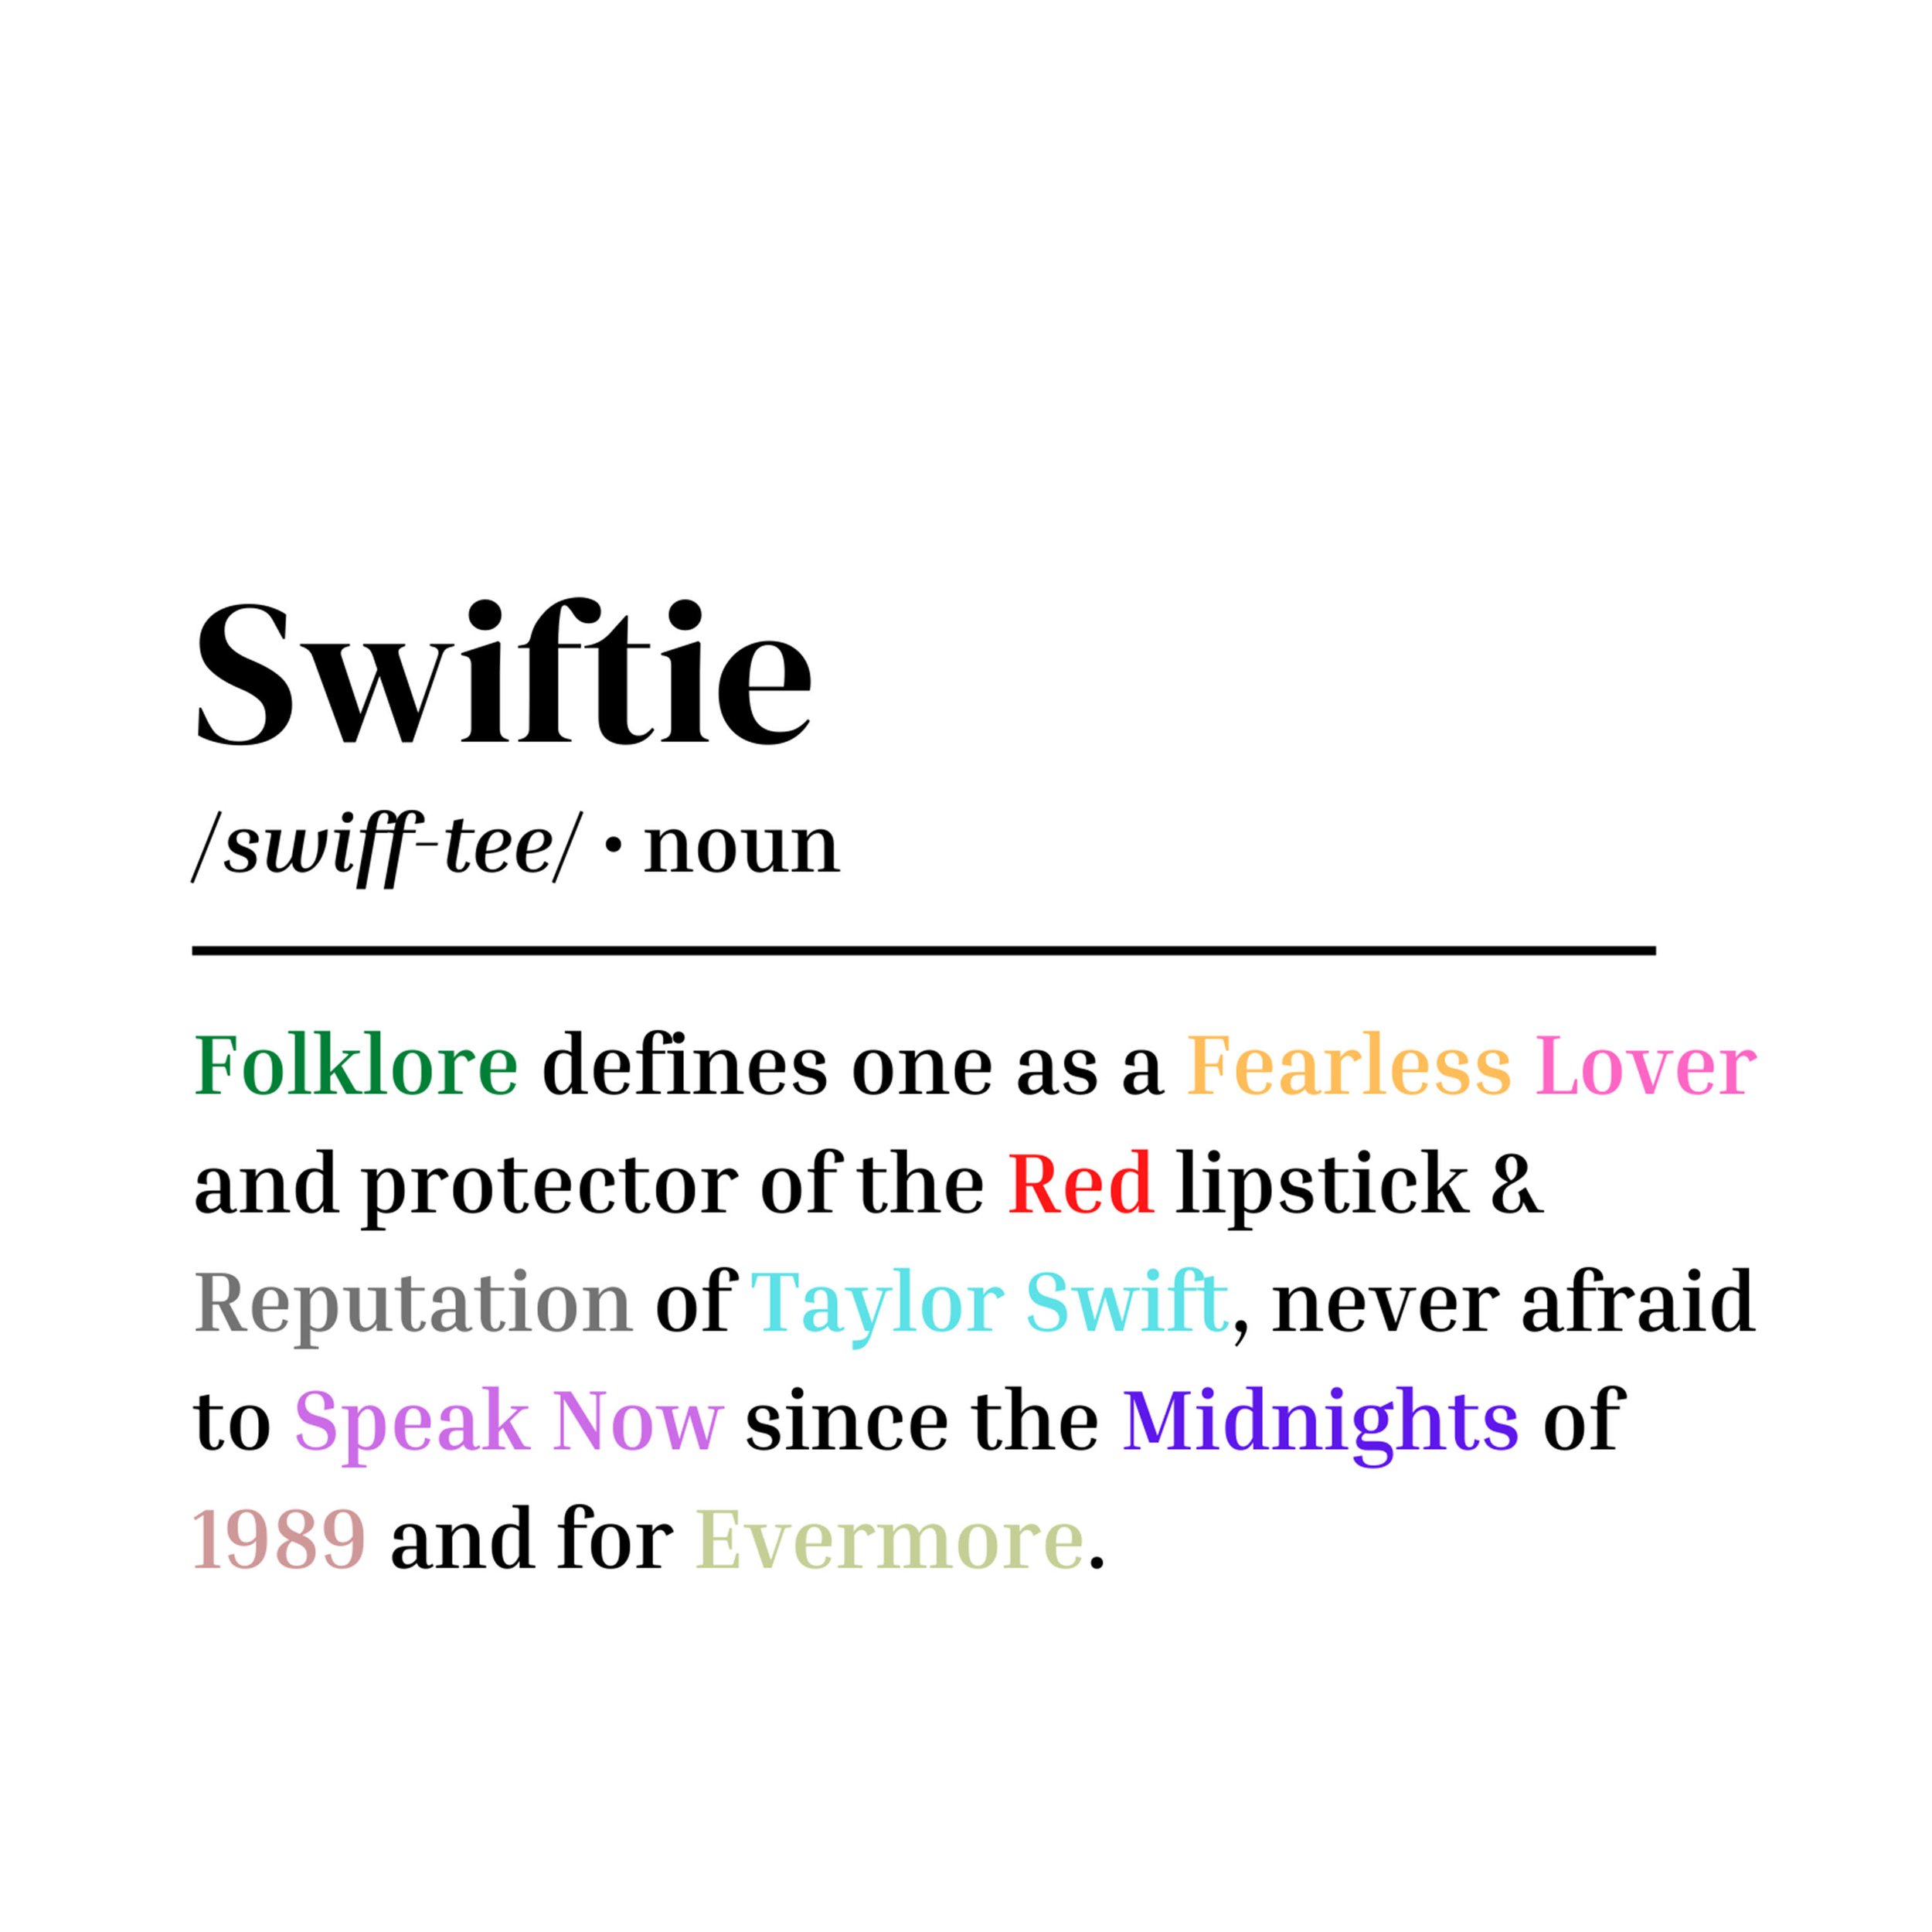 Swifties defined